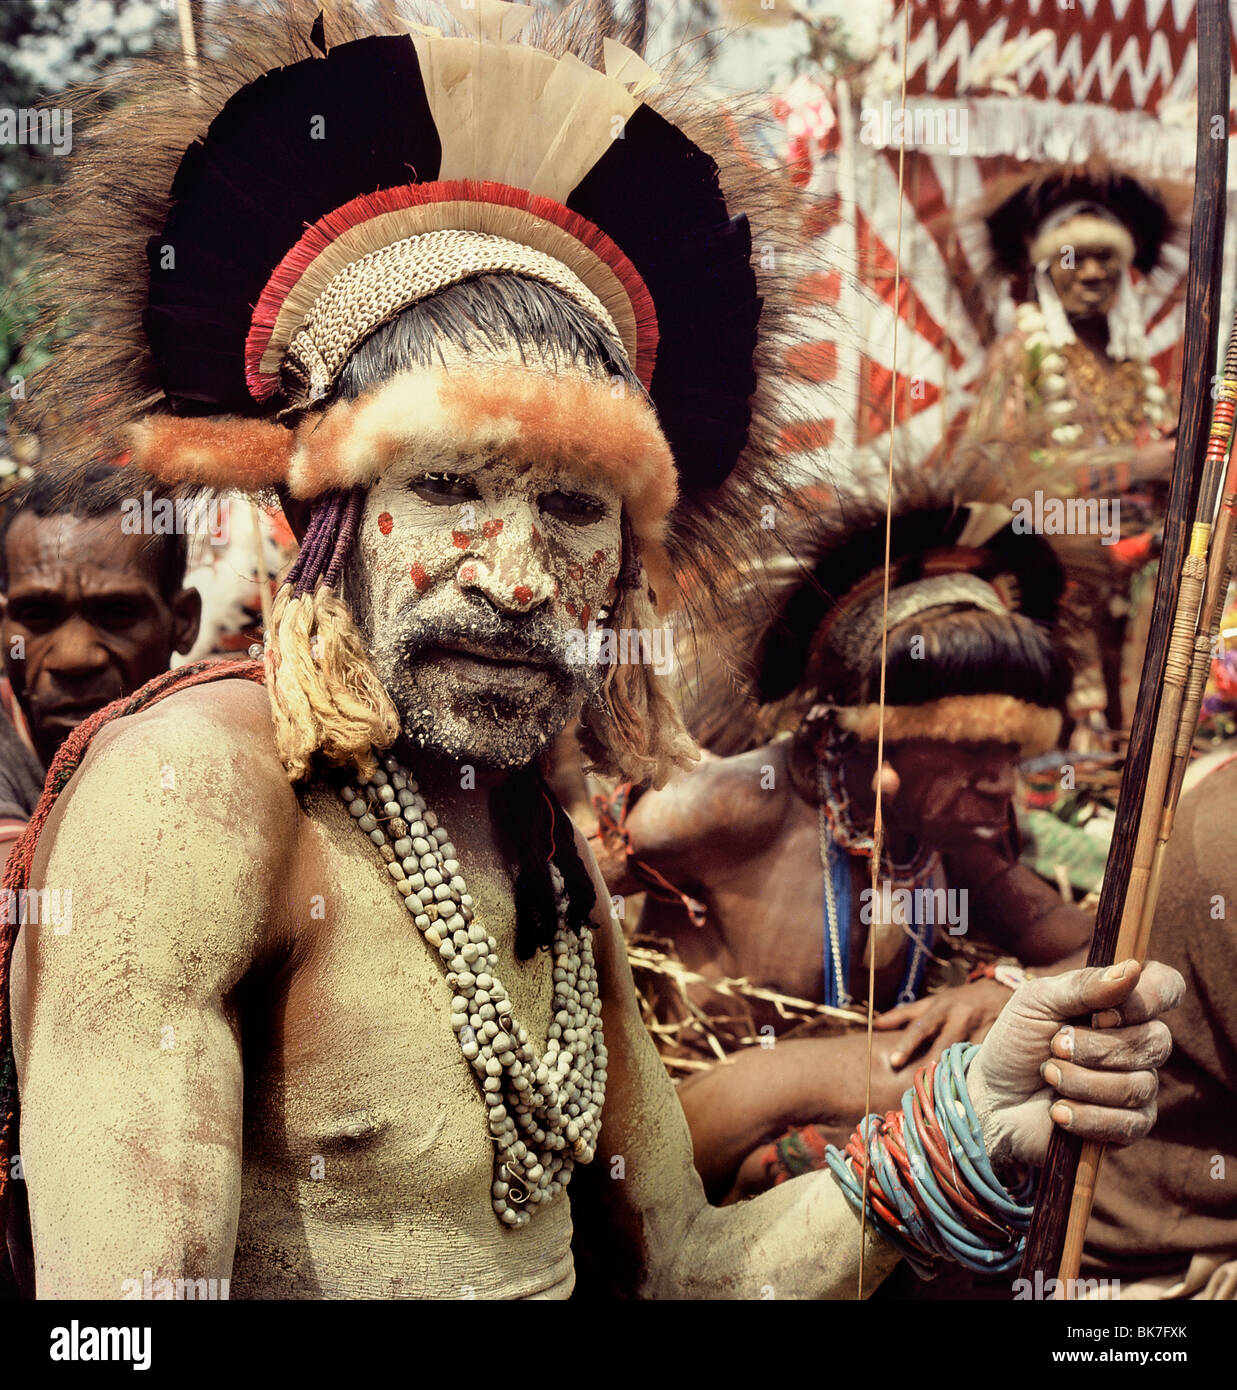 La tribu Asaro photographié en 1974 dans un costume complet pour l'ami caouette étalage de richesse, Goroka, Papouasie-Nouvelle-Guinée, du Pacifique Banque D'Images